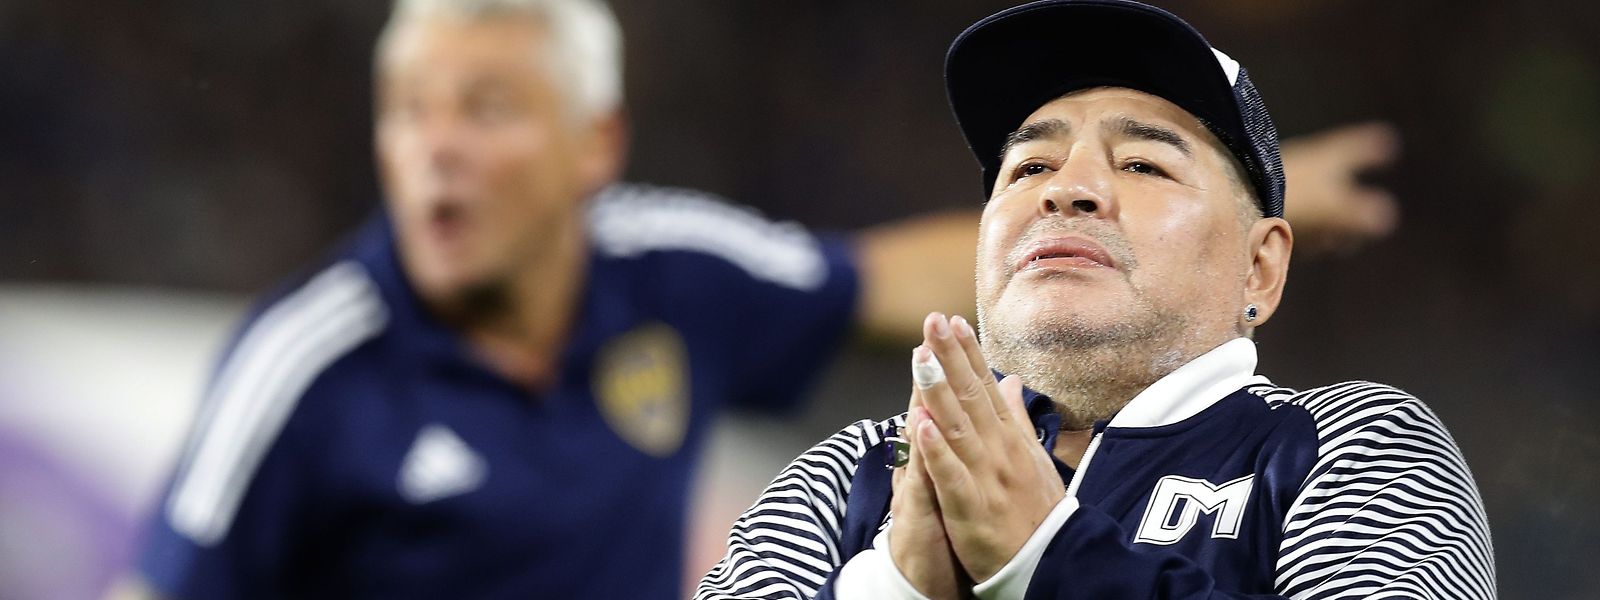 Diego Maradona musste sich vor wenigen Tagen einer Gehirn-OP unterziehen.